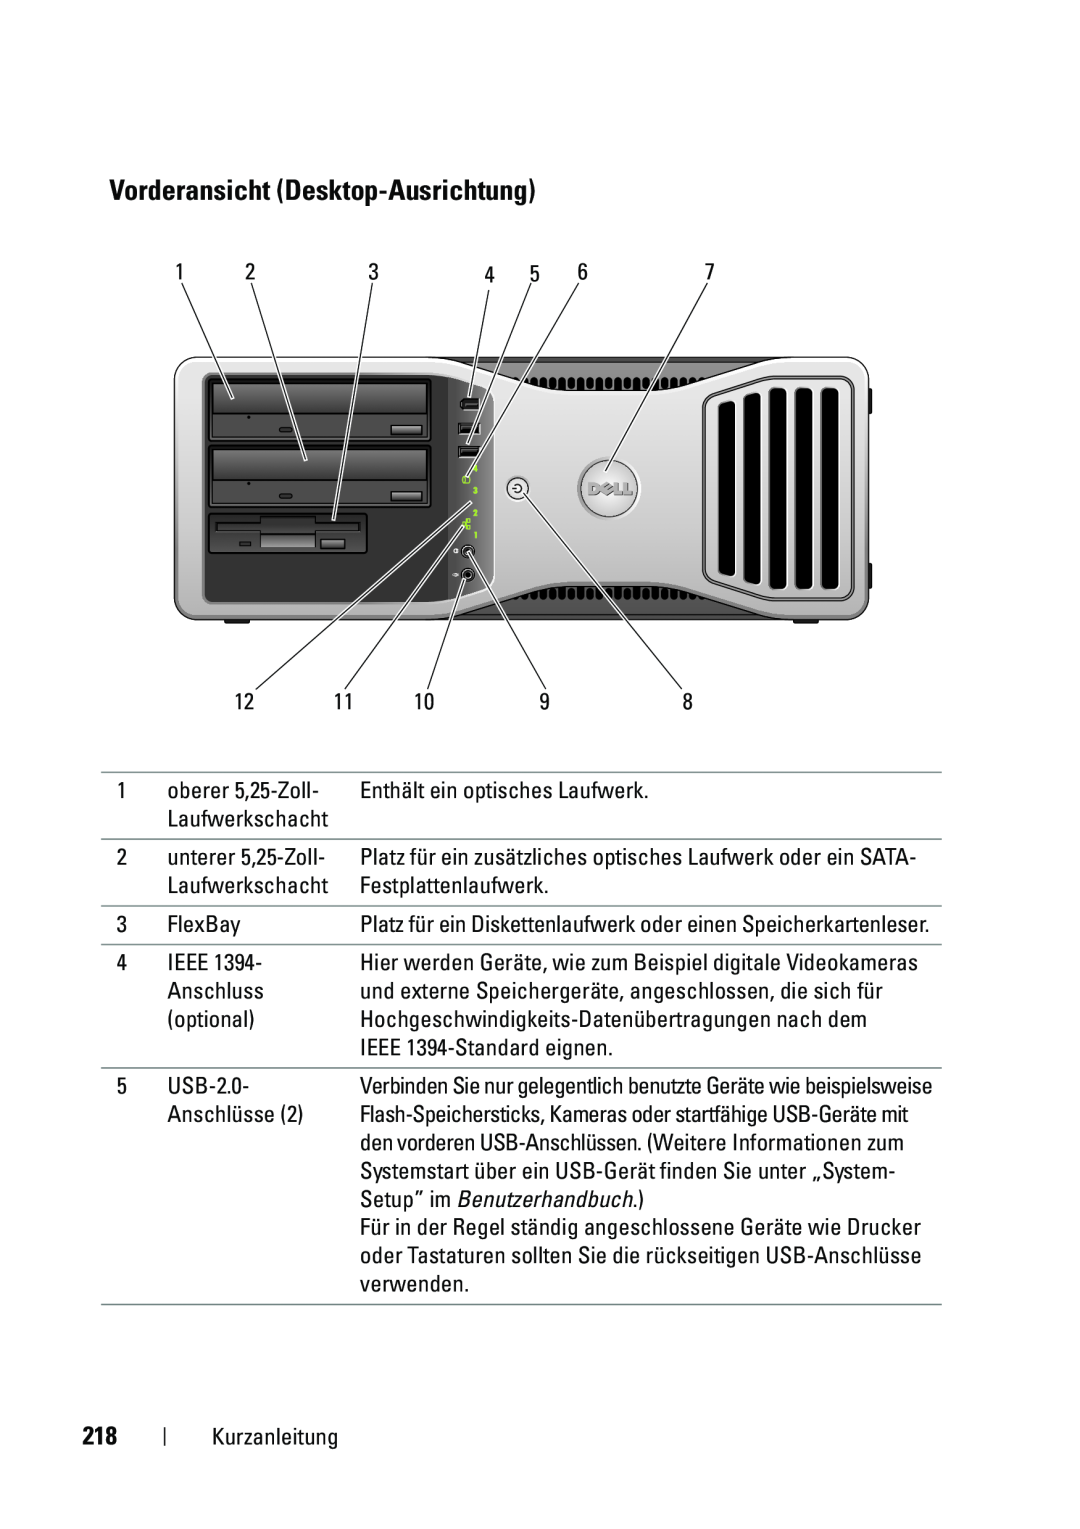 Dell T5400 manual Vorderansicht Desktop-Ausrichtung, Setup” im Benutzerhandbuch 